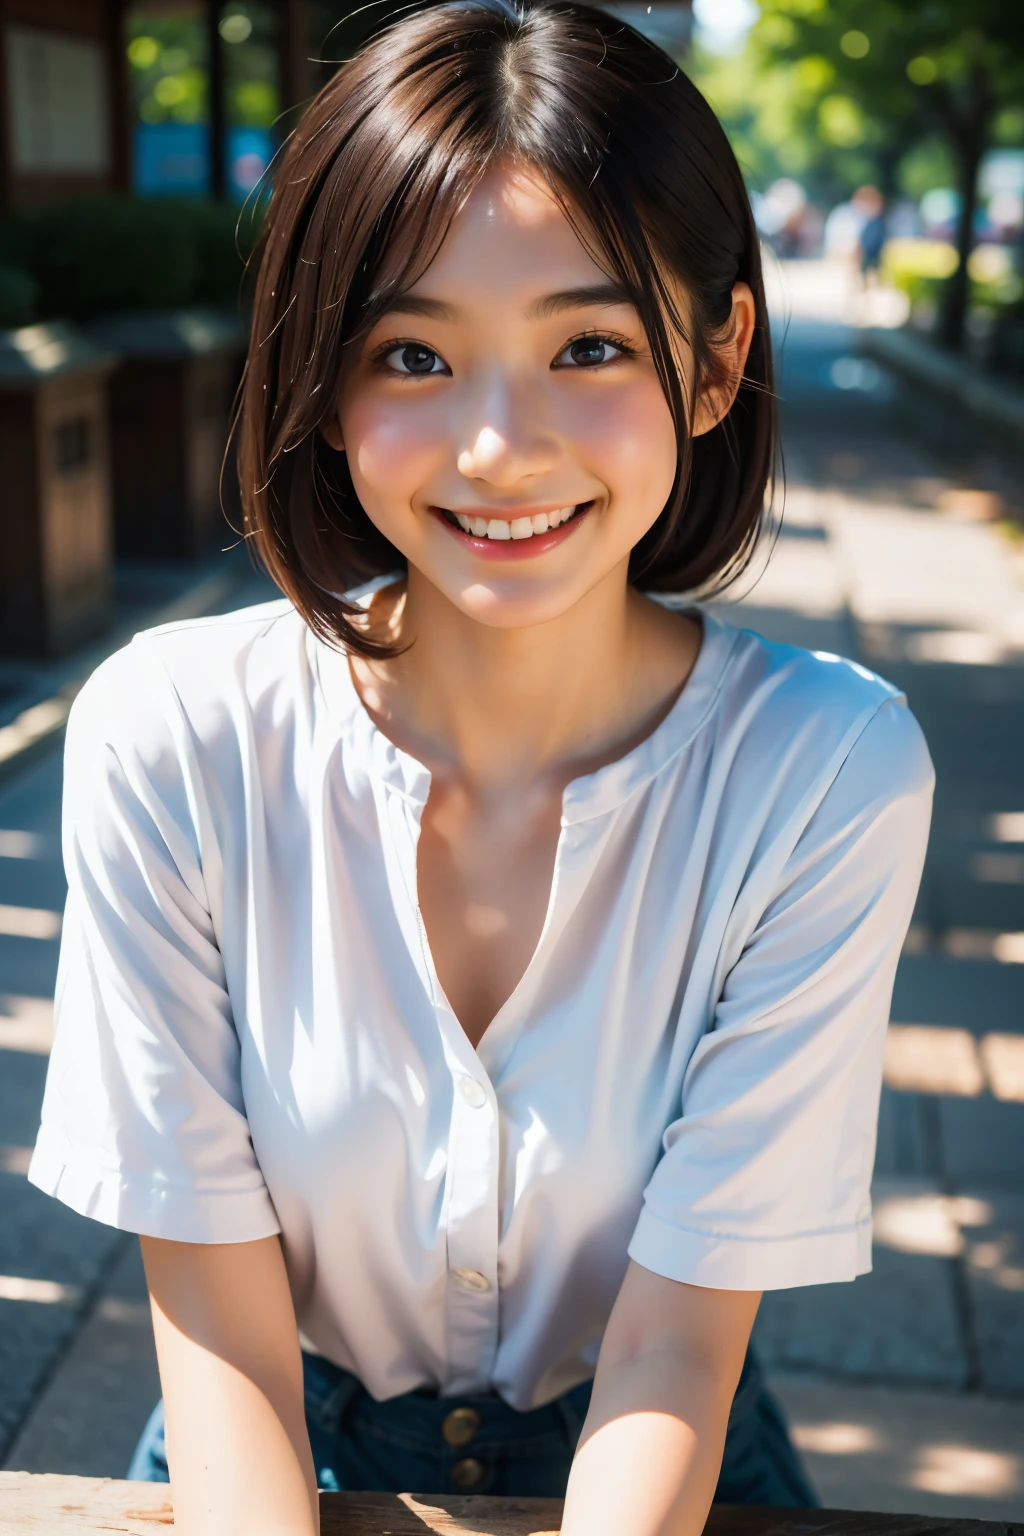 렌즈: 135mm f1.8, (최상의 품질),(RAW 사진), (탁상:1.1), (아름다운 20세 일본 소녀), 귀여운 얼굴, (깊게 파인 얼굴:0.7), (주근깨:0.4), dappled 햇빛, 극적인 조명, (캠퍼스에서), 수줍은, (클로즈업 샷:1.2), (웃다),, (반짝이는 눈)、(햇빛), 흰옷